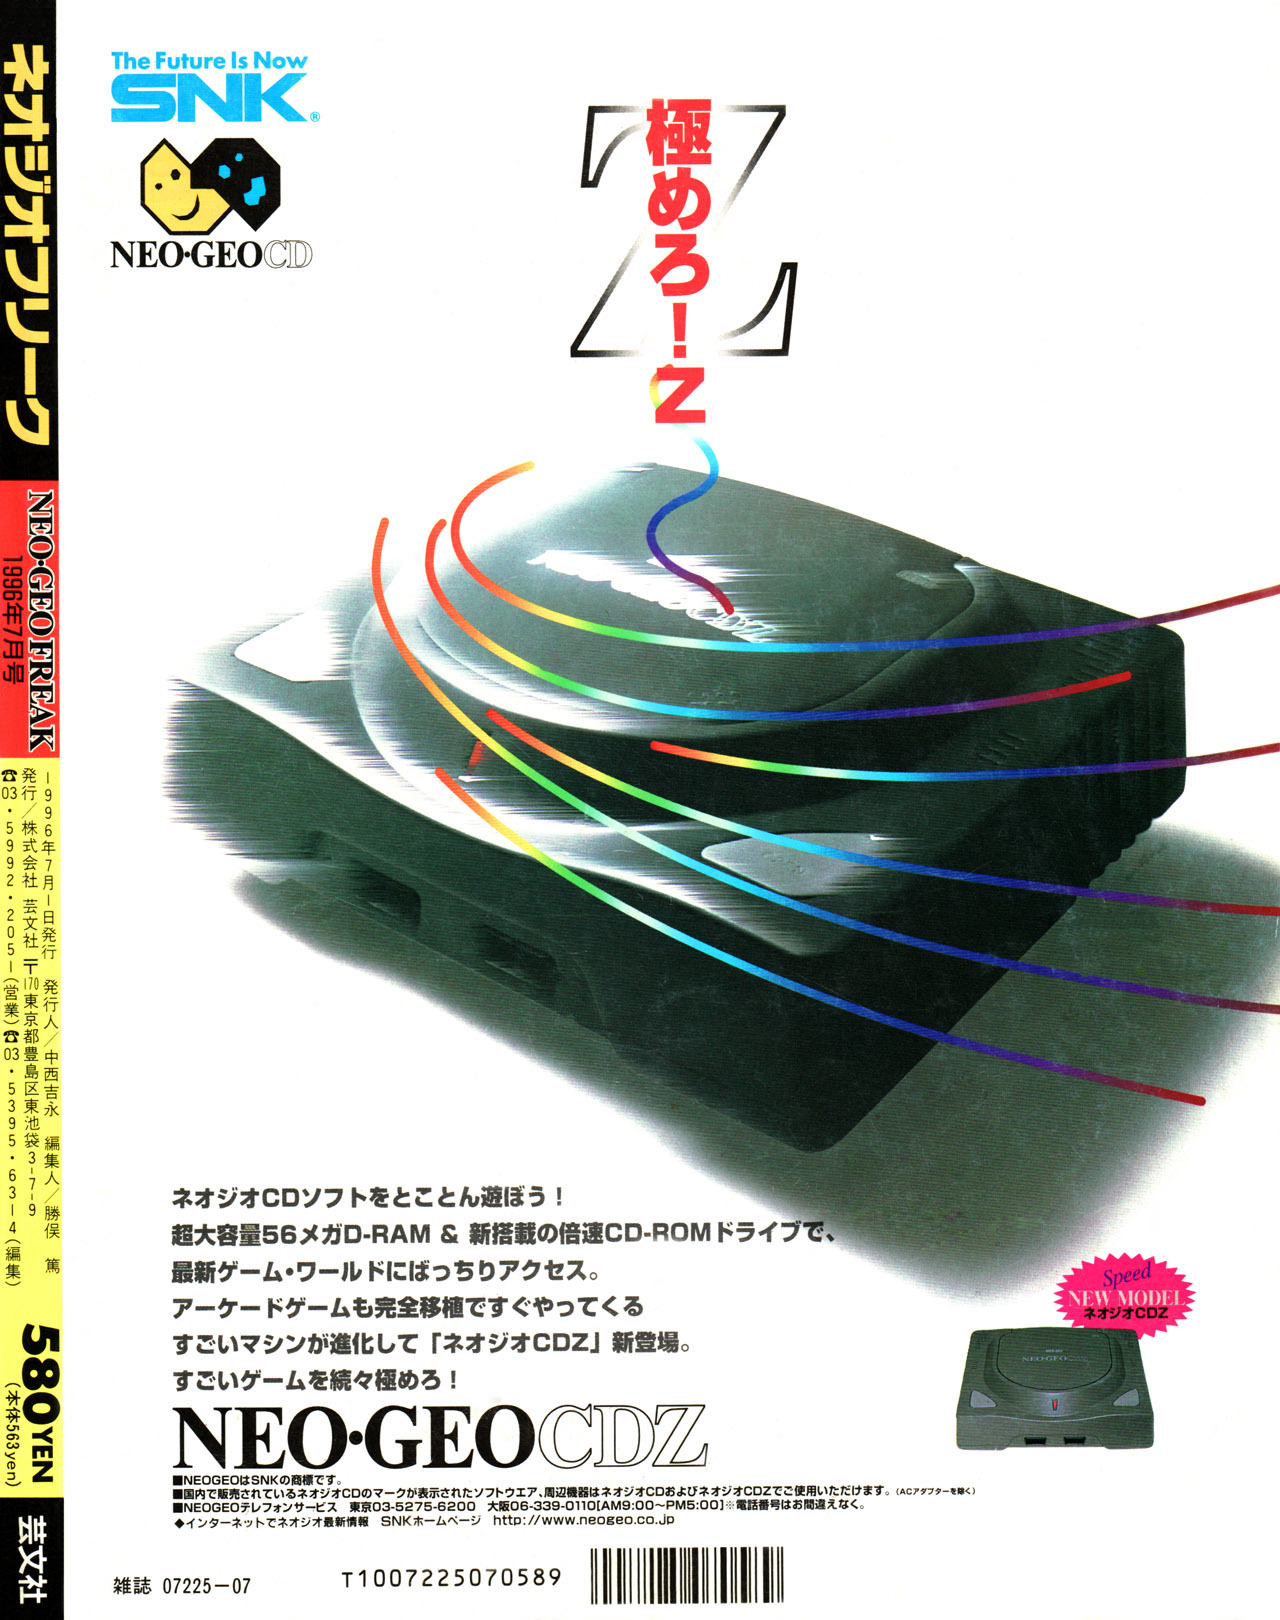 “Neo Geo CDZ” [Japan]
• Neo Geo Freak, 1996 (Vol. 7)
• Scanned by RetroMags, via EmuParadise